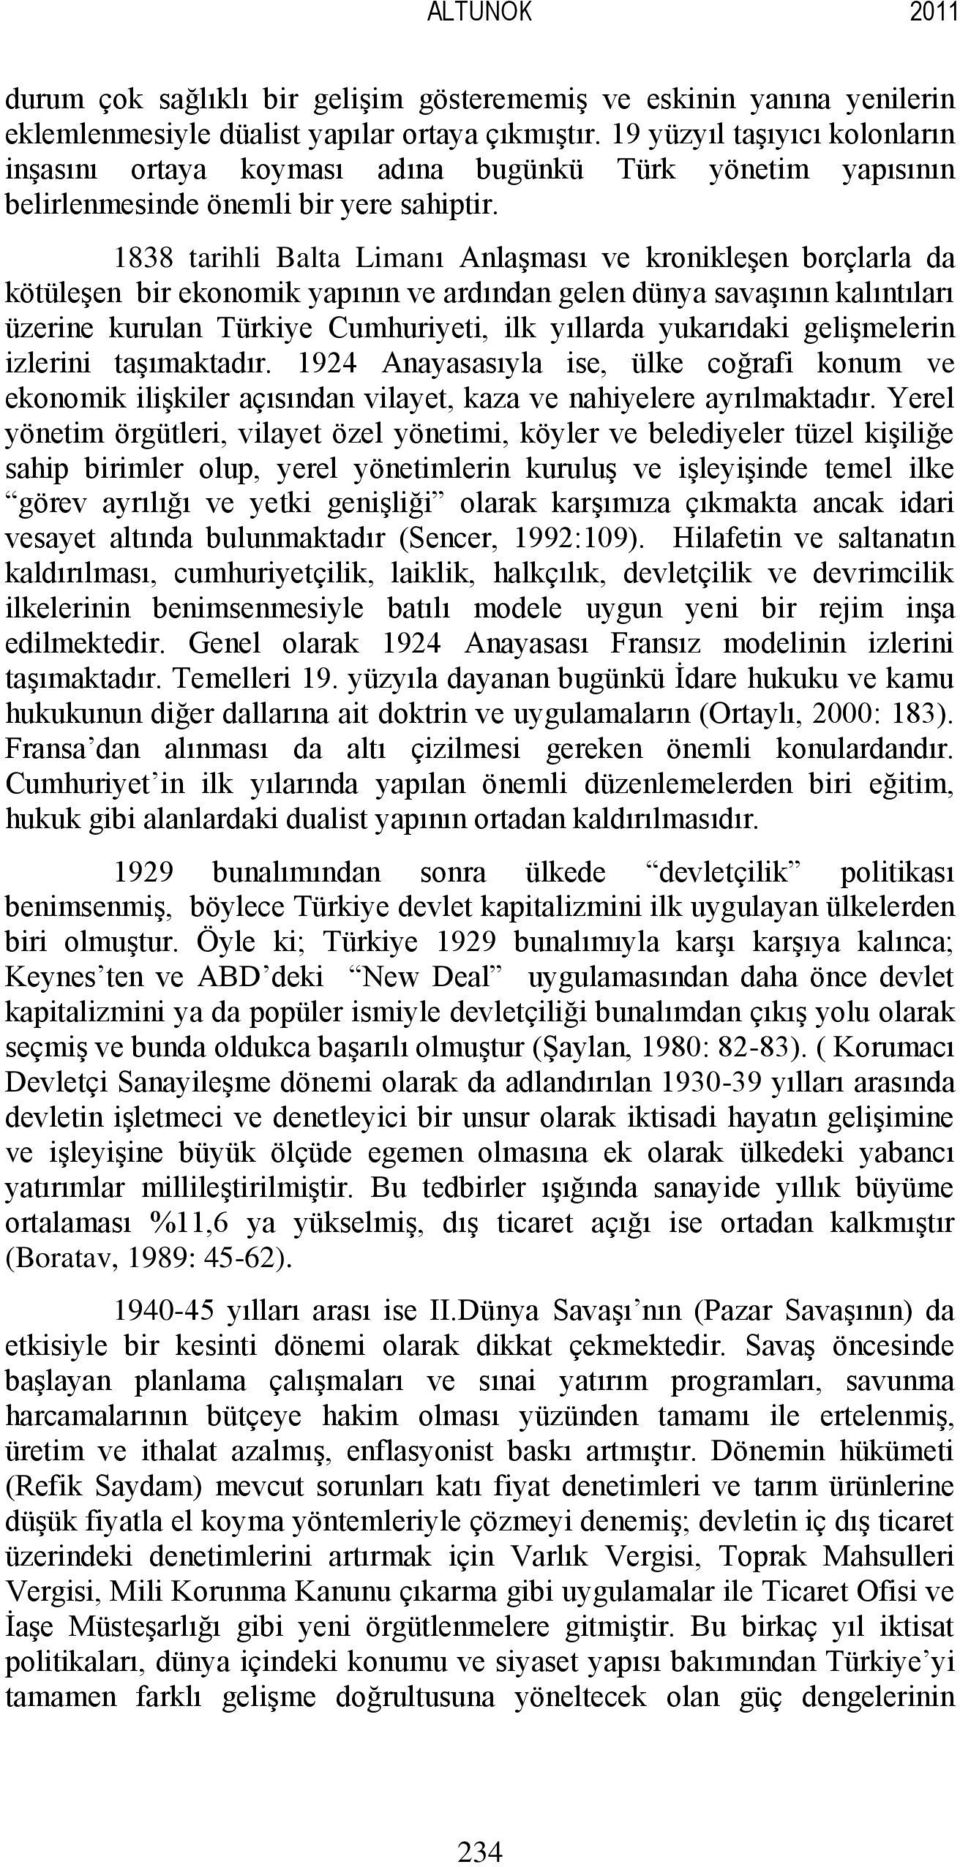 1838 tarihli Balta Limanı Anlaşması ve kronikleşen borçlarla da kötüleşen bir ekonomik yapının ve ardından gelen dünya savaşının kalıntıları üzerine kurulan Türkiye Cumhuriyeti, ilk yıllarda